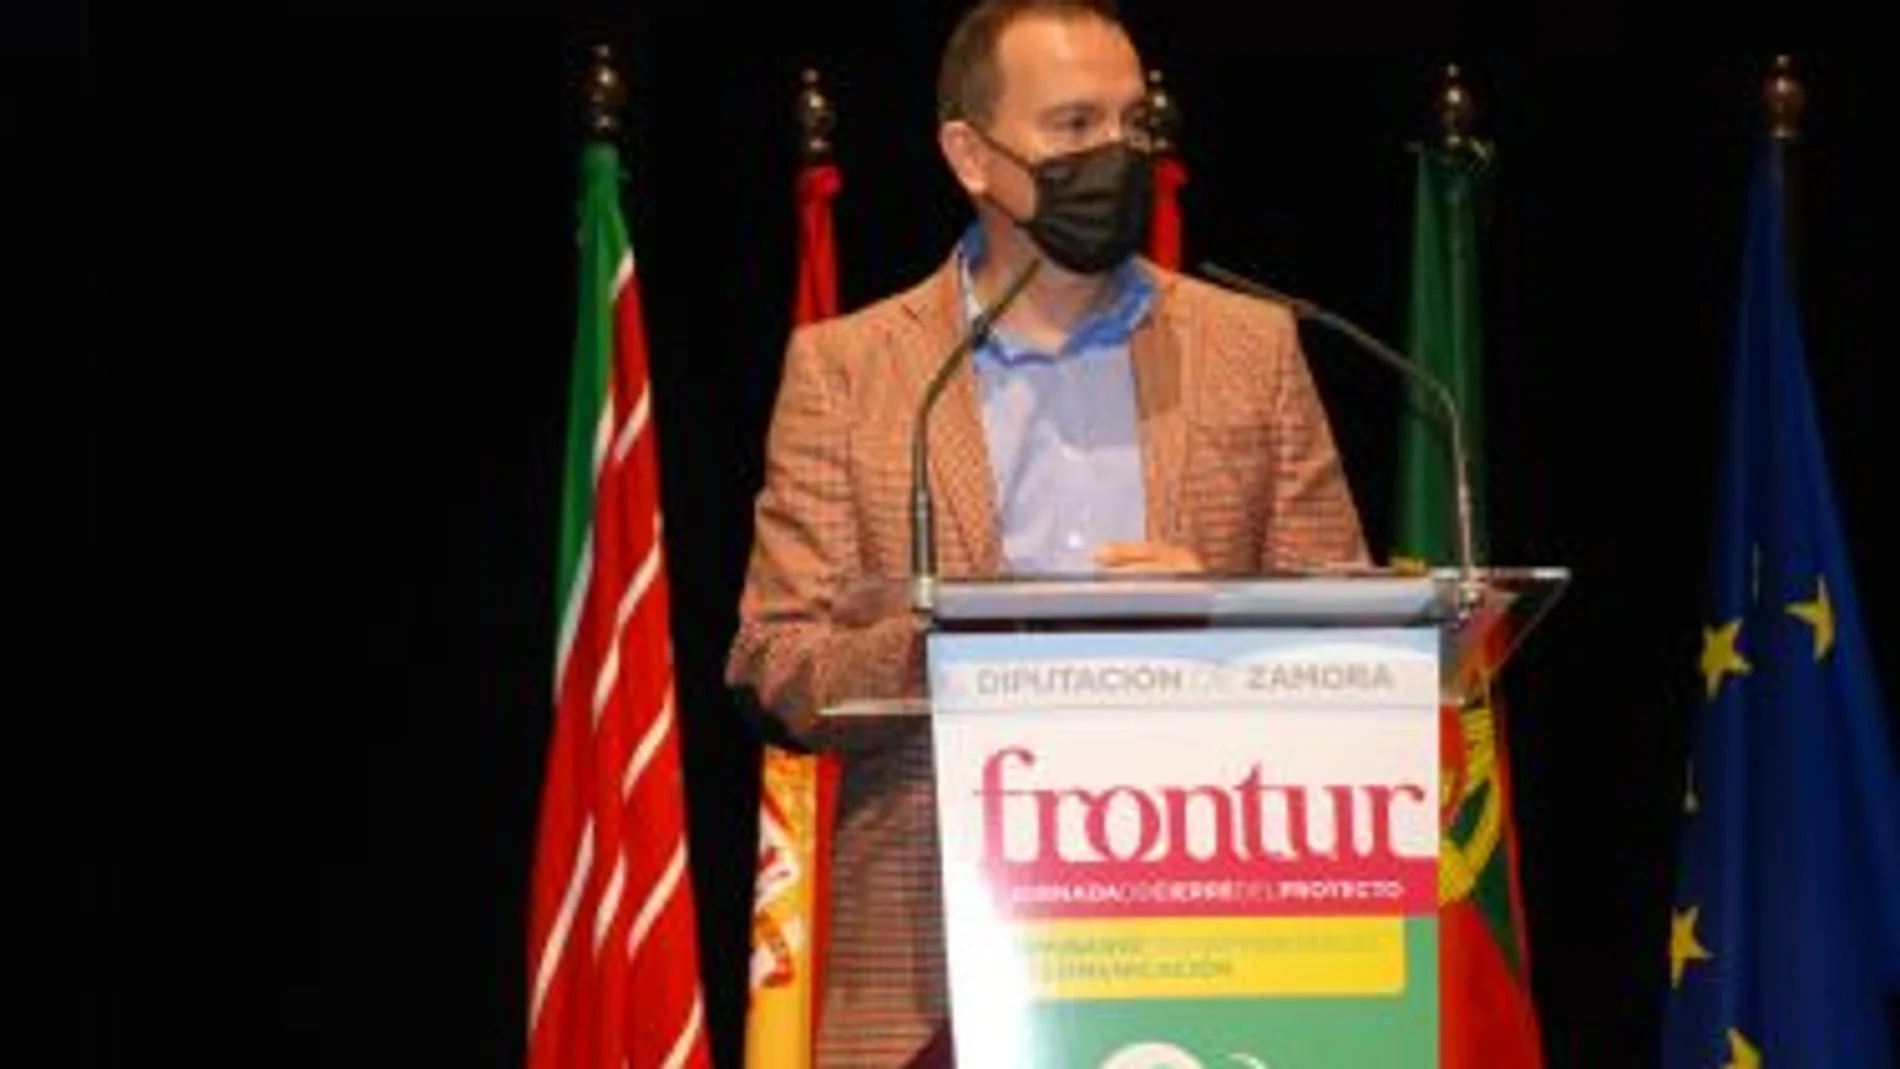 El presidente de la Diputación de Zamora, Francisco José Requejo, presenta los resultados del proyecto FRONTUR